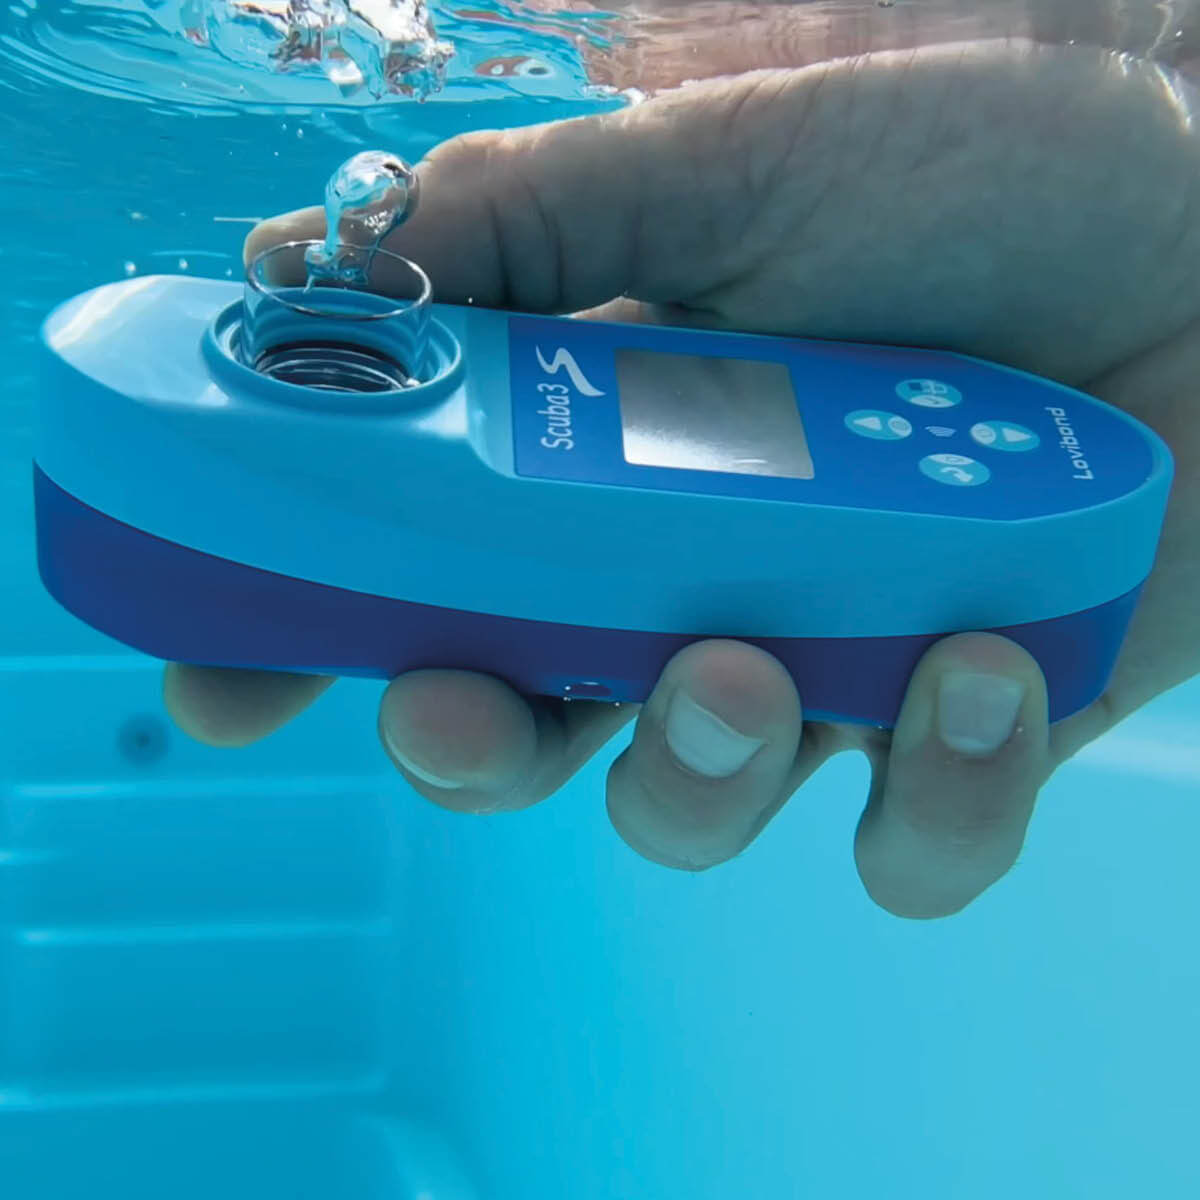 Testeur électronique pour l'eau de piscine